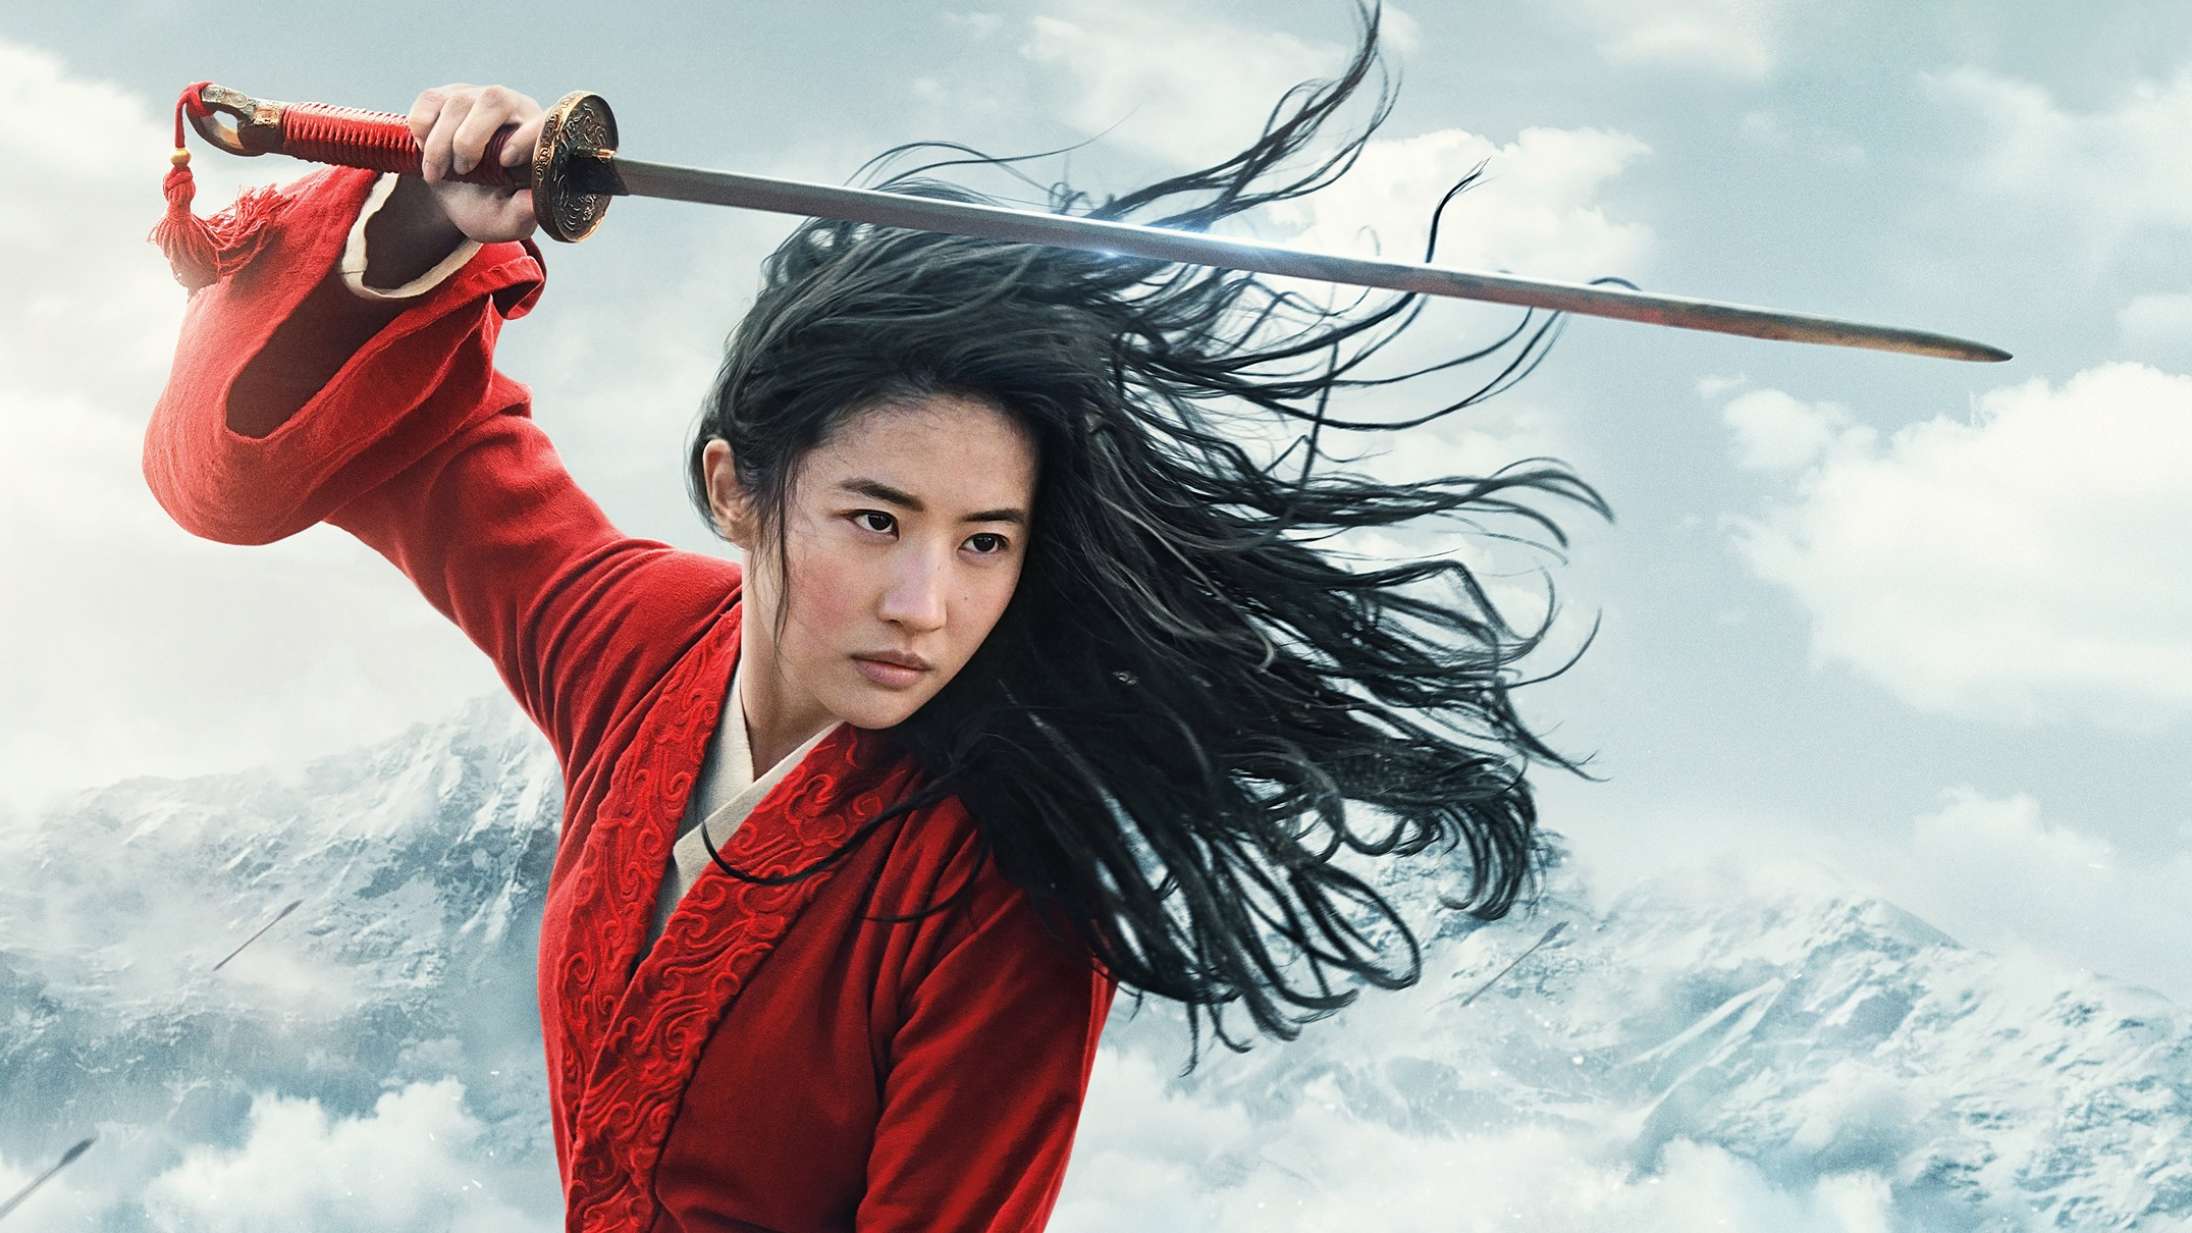 Fra whitewashing til storpolitik: ’Mulan’ er blevet Disneys mest kontroversielle film i årtier